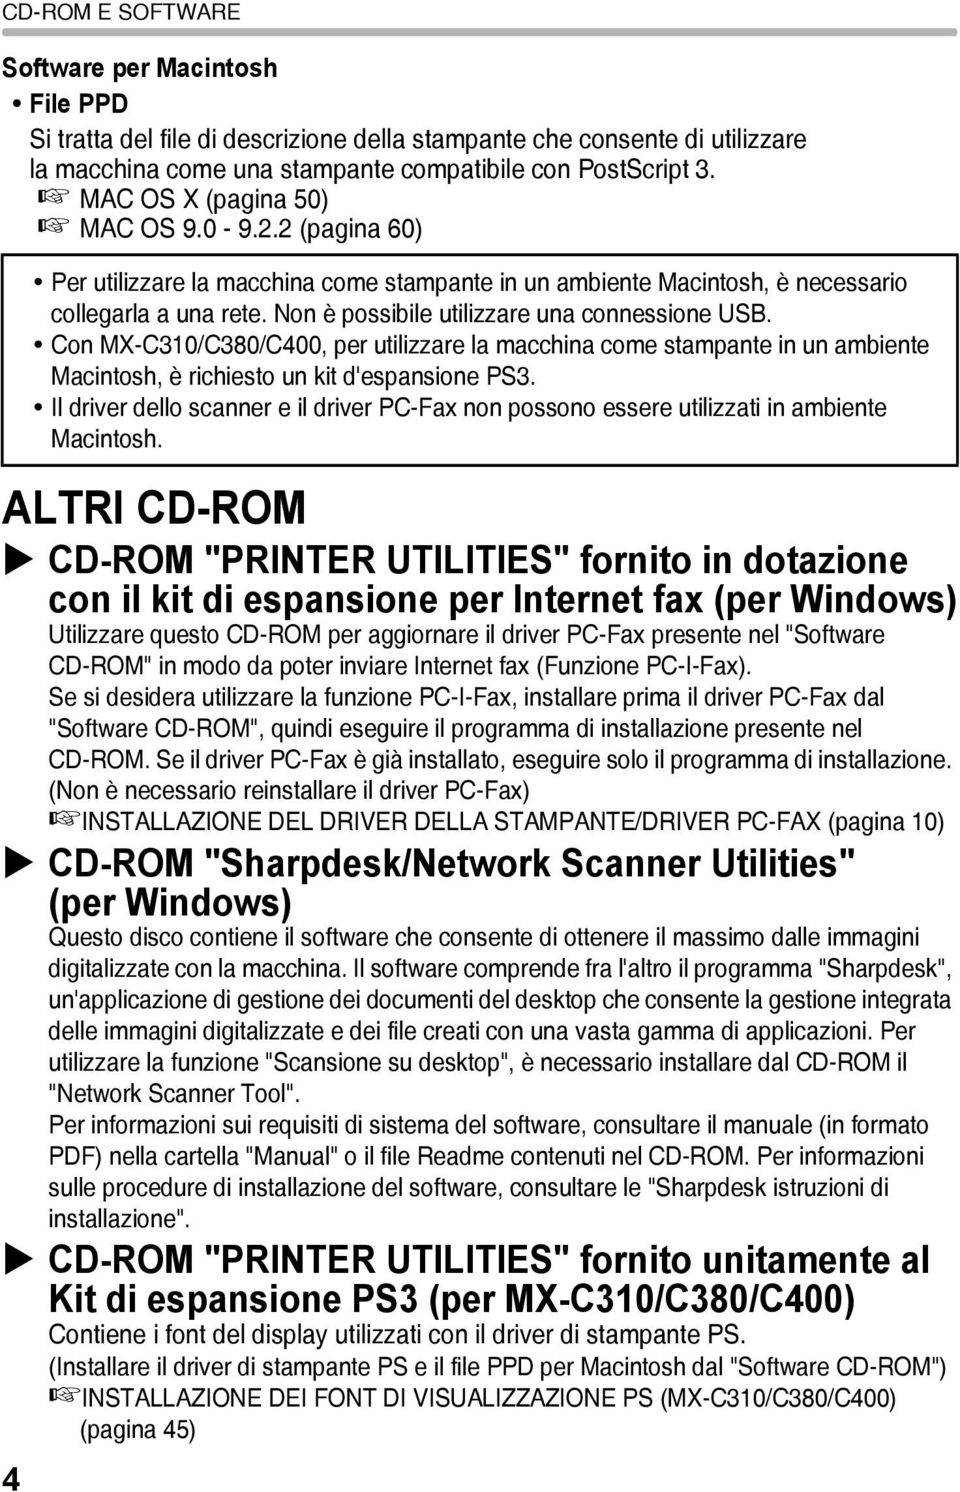 2 (pagina 60) ALTRI CD-ROM CD-ROM "PRINTER UTILITIES" fornito in dotazione con il kit di espansione per Internet fax (per Windows) Utilizzare questo CD-ROM per aggiornare il driver PC-Fax presente